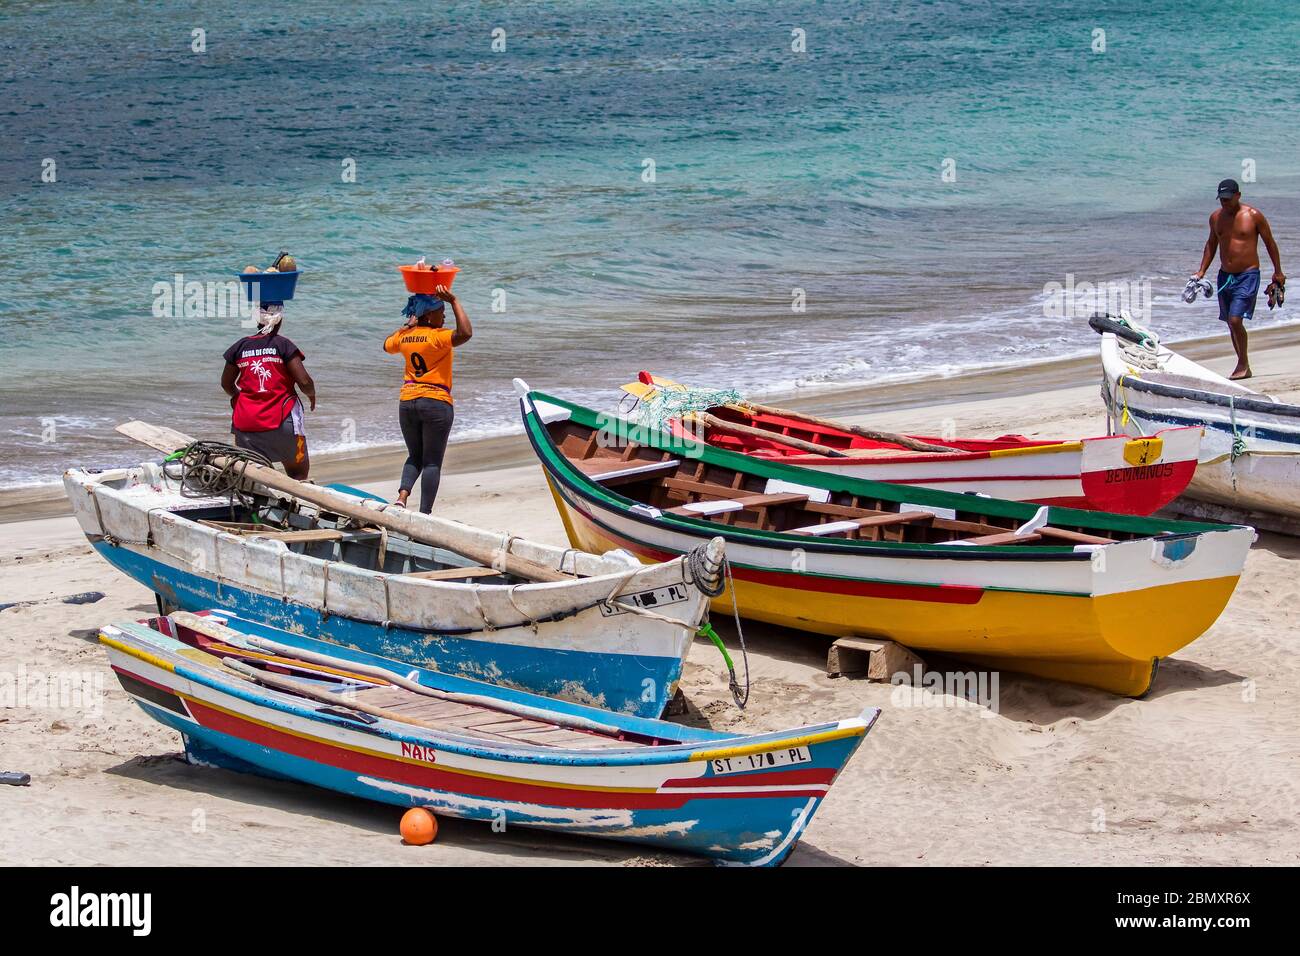 Zwei kapverdische Frauen transportieren Lebensmittel auf dem Kopf am Strand bei Tarrafa auf der Insel Santiago, Kap Verde / Cabo Verde Stockfoto